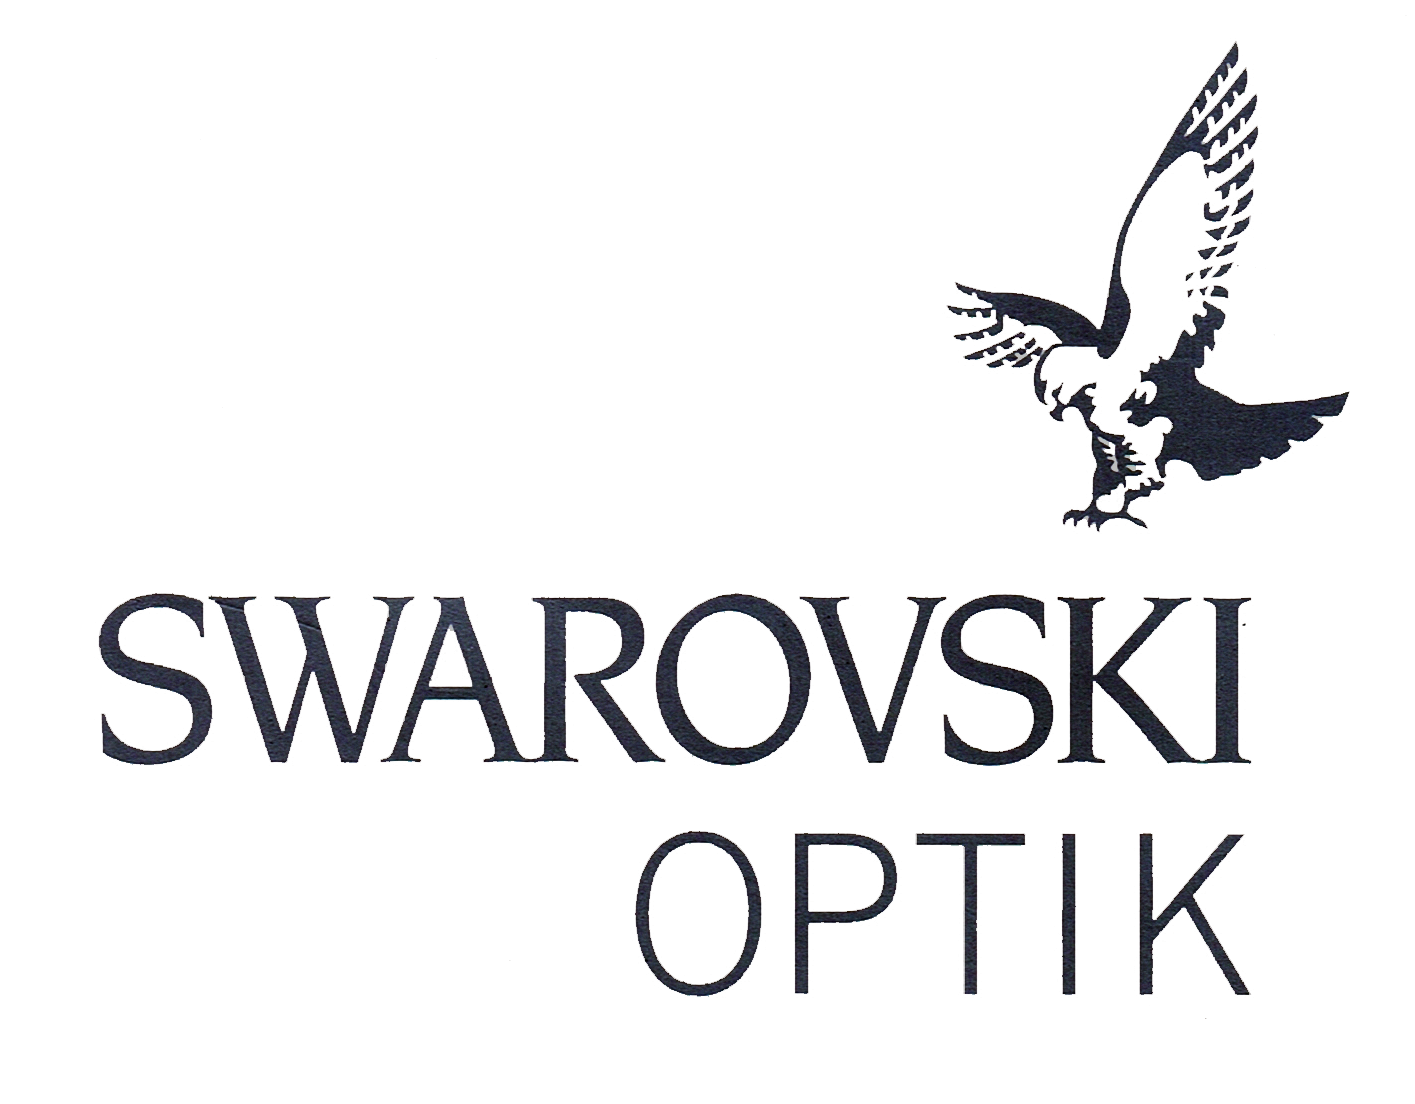 Swarovski, hervorragende Optik aus Österreich